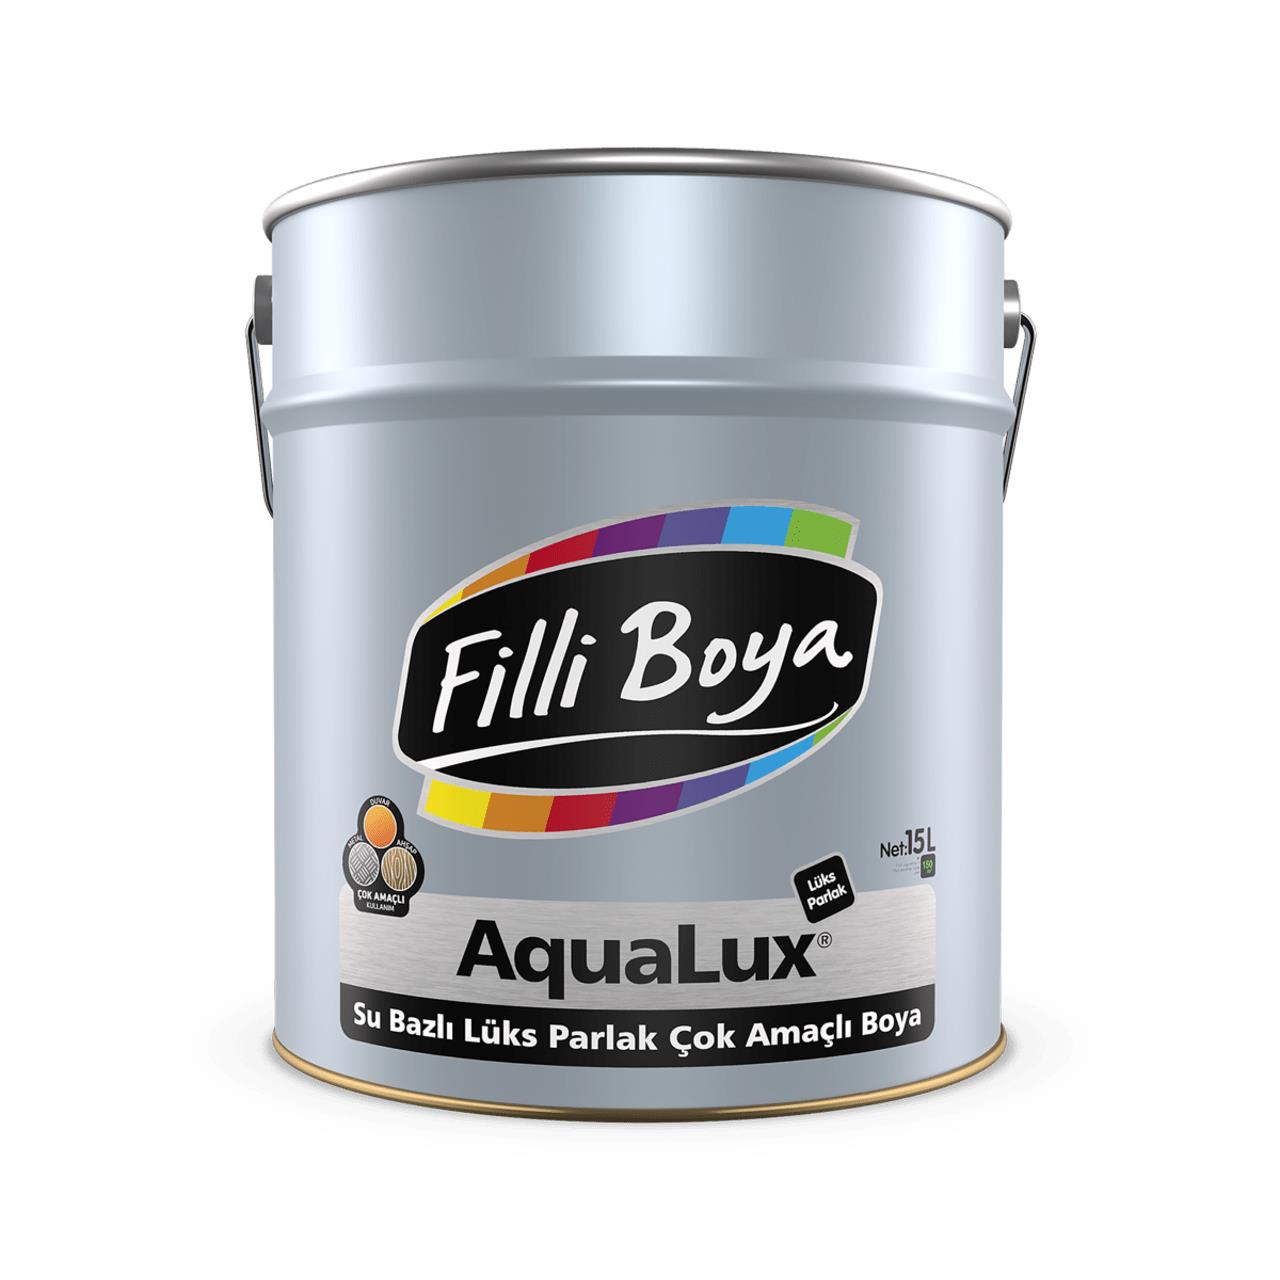 Filli Boya Aqualux Parlak Çok Amaçlı Boya 0,75 LT - Filizjet